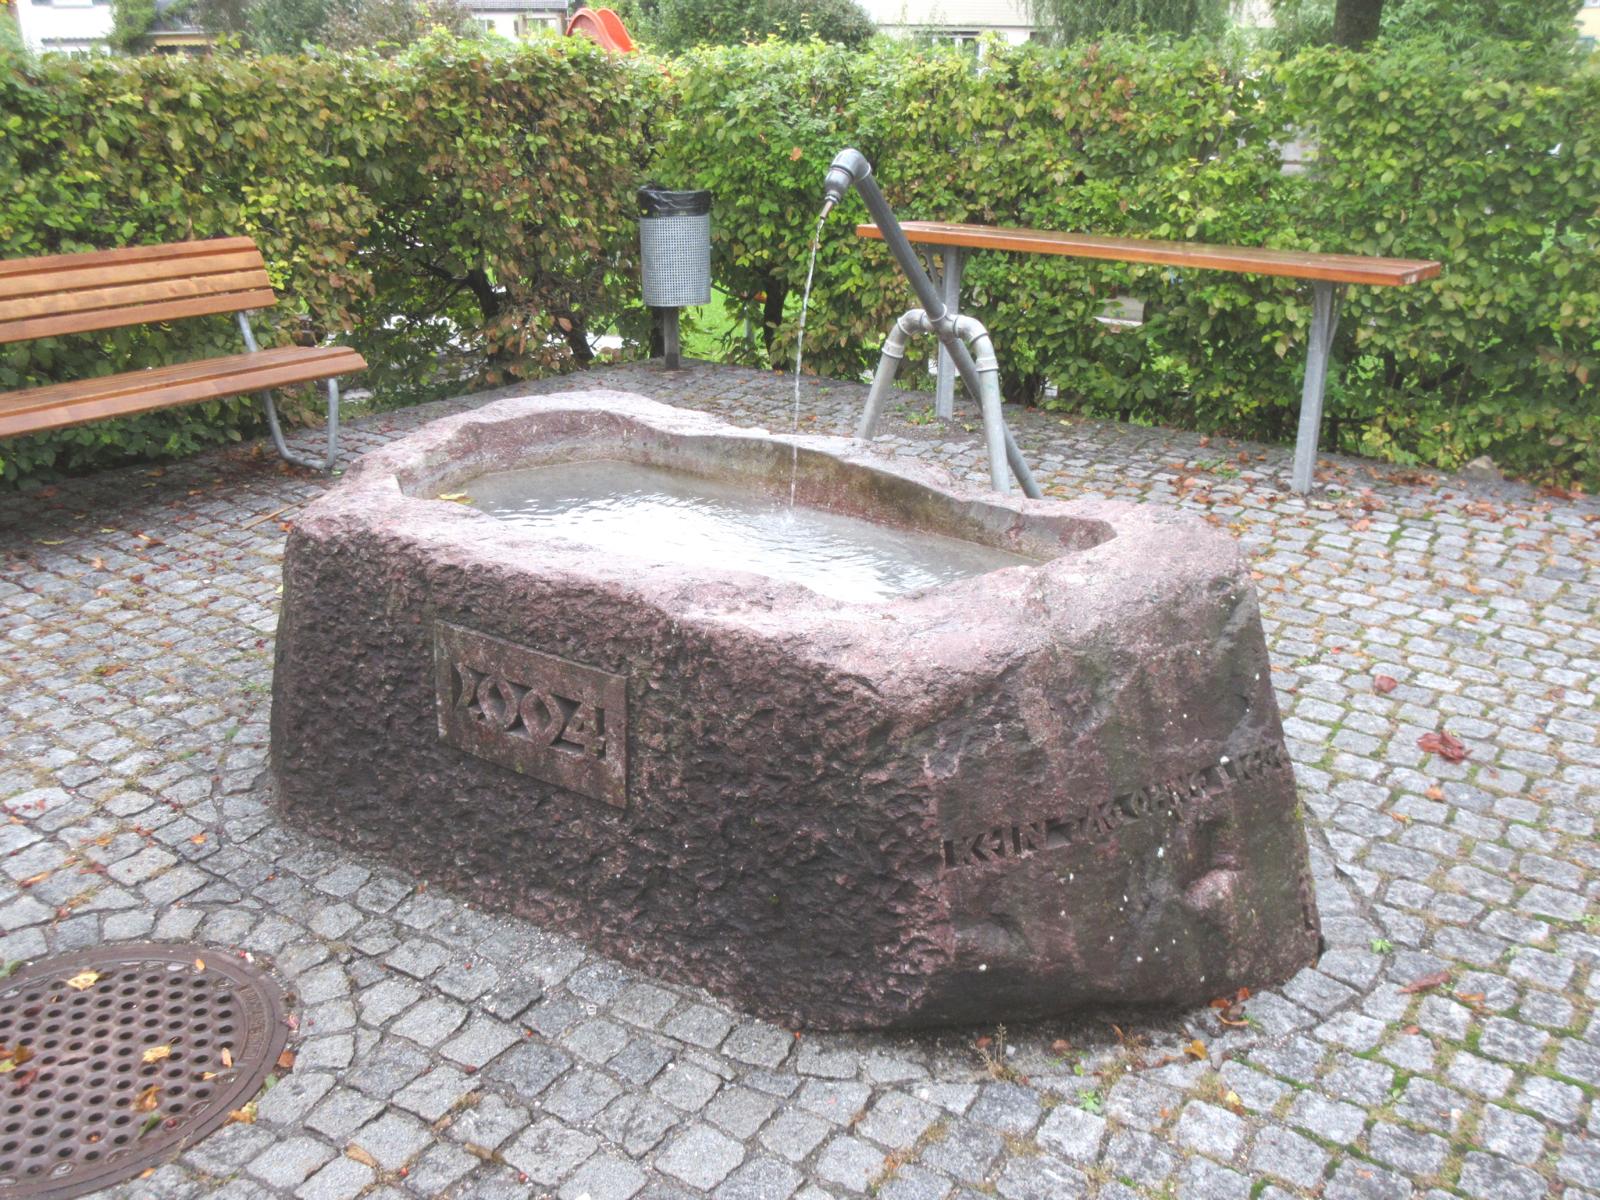 Kirchweg - Spielplatz *** 2004 *** Verrucano (Sernifit von Rotrisi, Ennenda *** -- *** Inschriften: "Drei Tage ohne Wasser", "Kein Tag ohne Liebe", Steinmetzzeichen